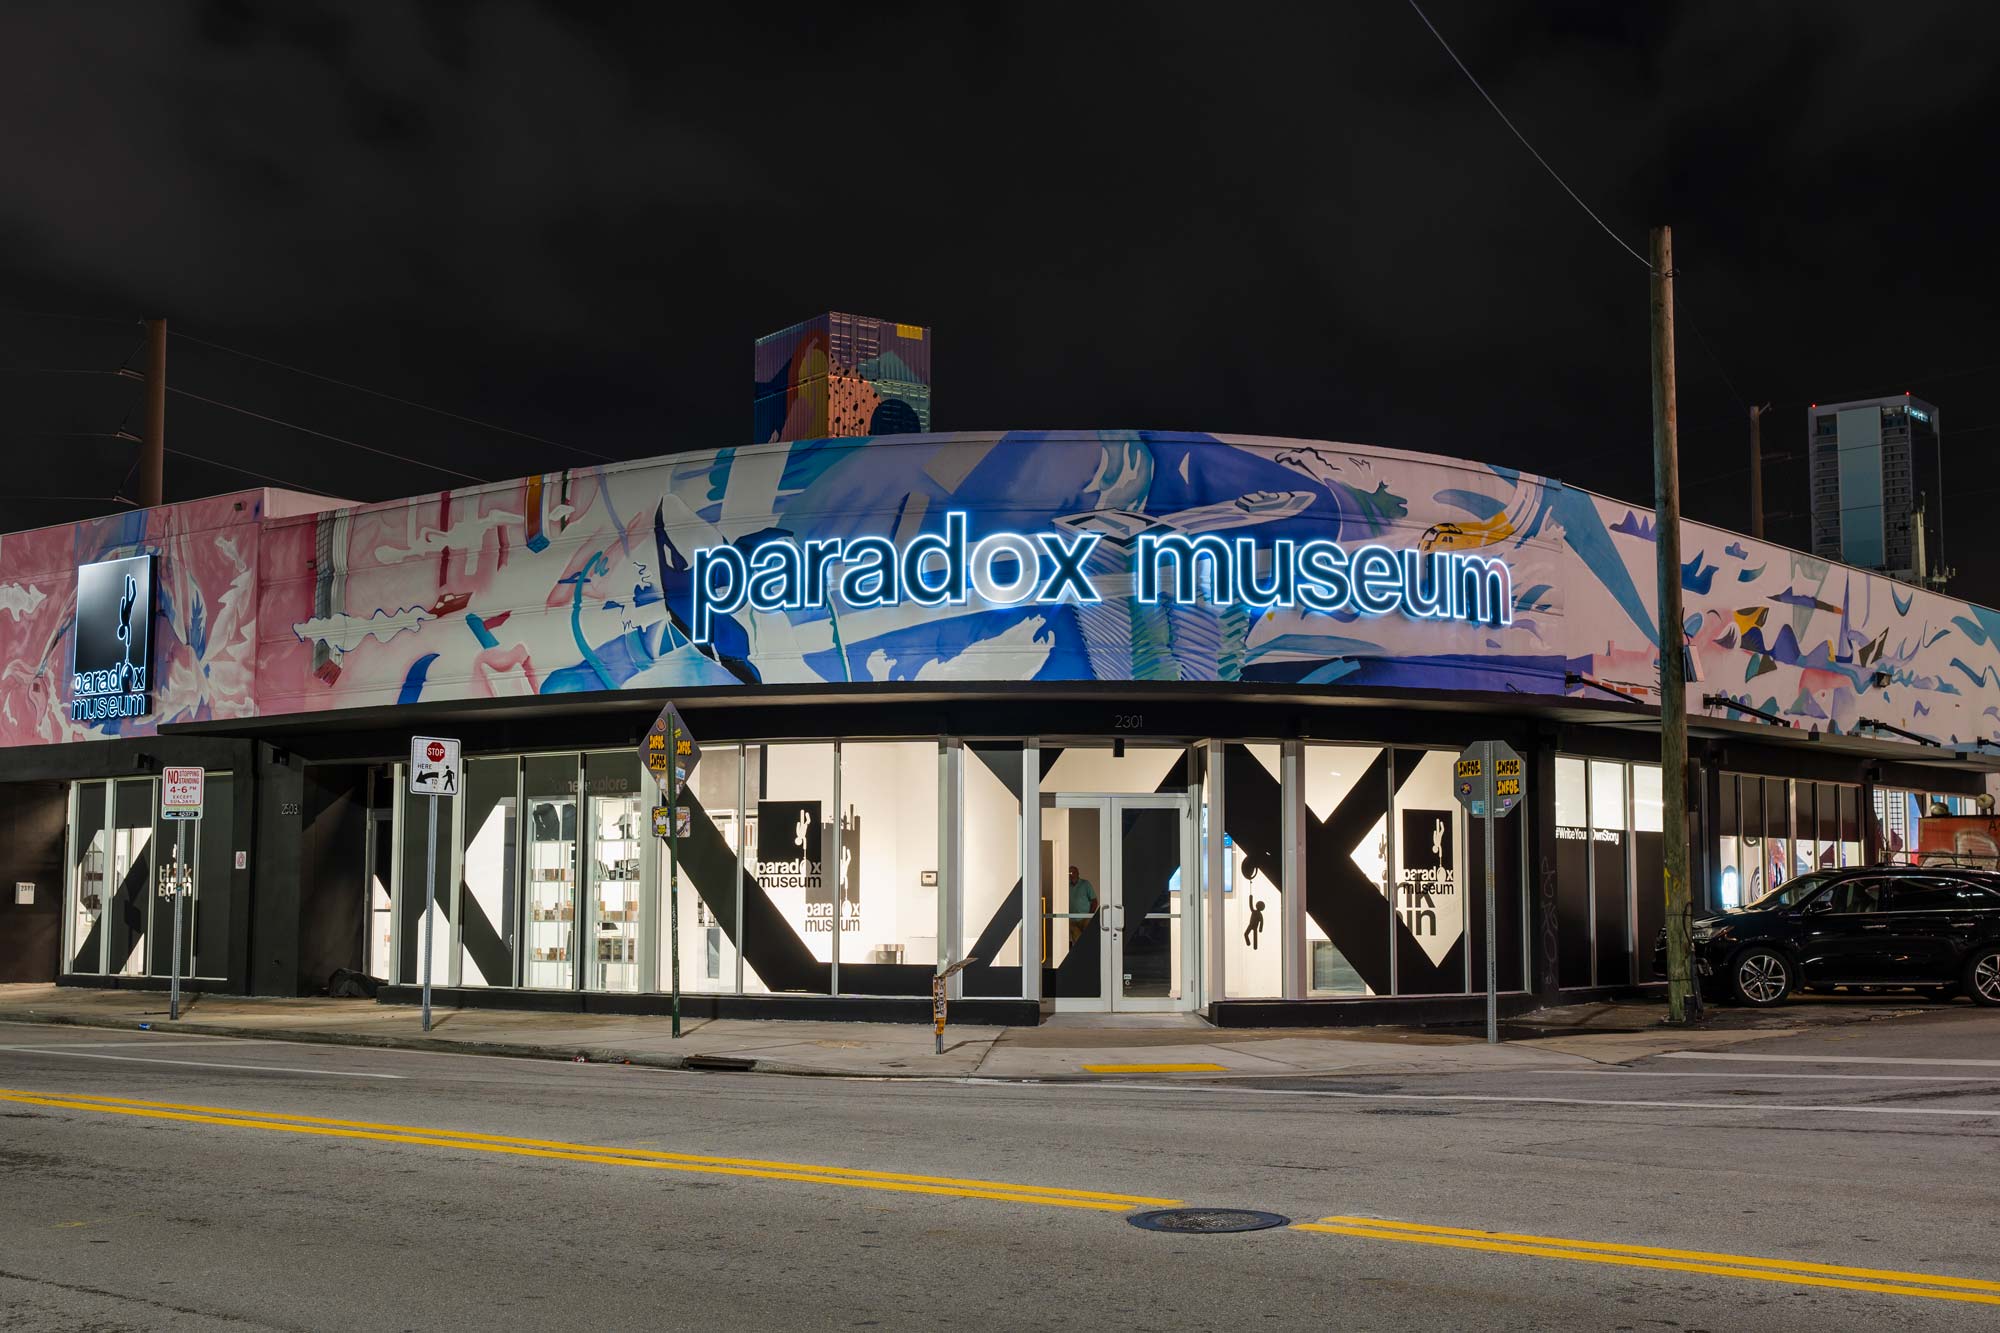 ¡Miami Emprendedores y Paradox Museum se unen para ofrecer una experiencia única!